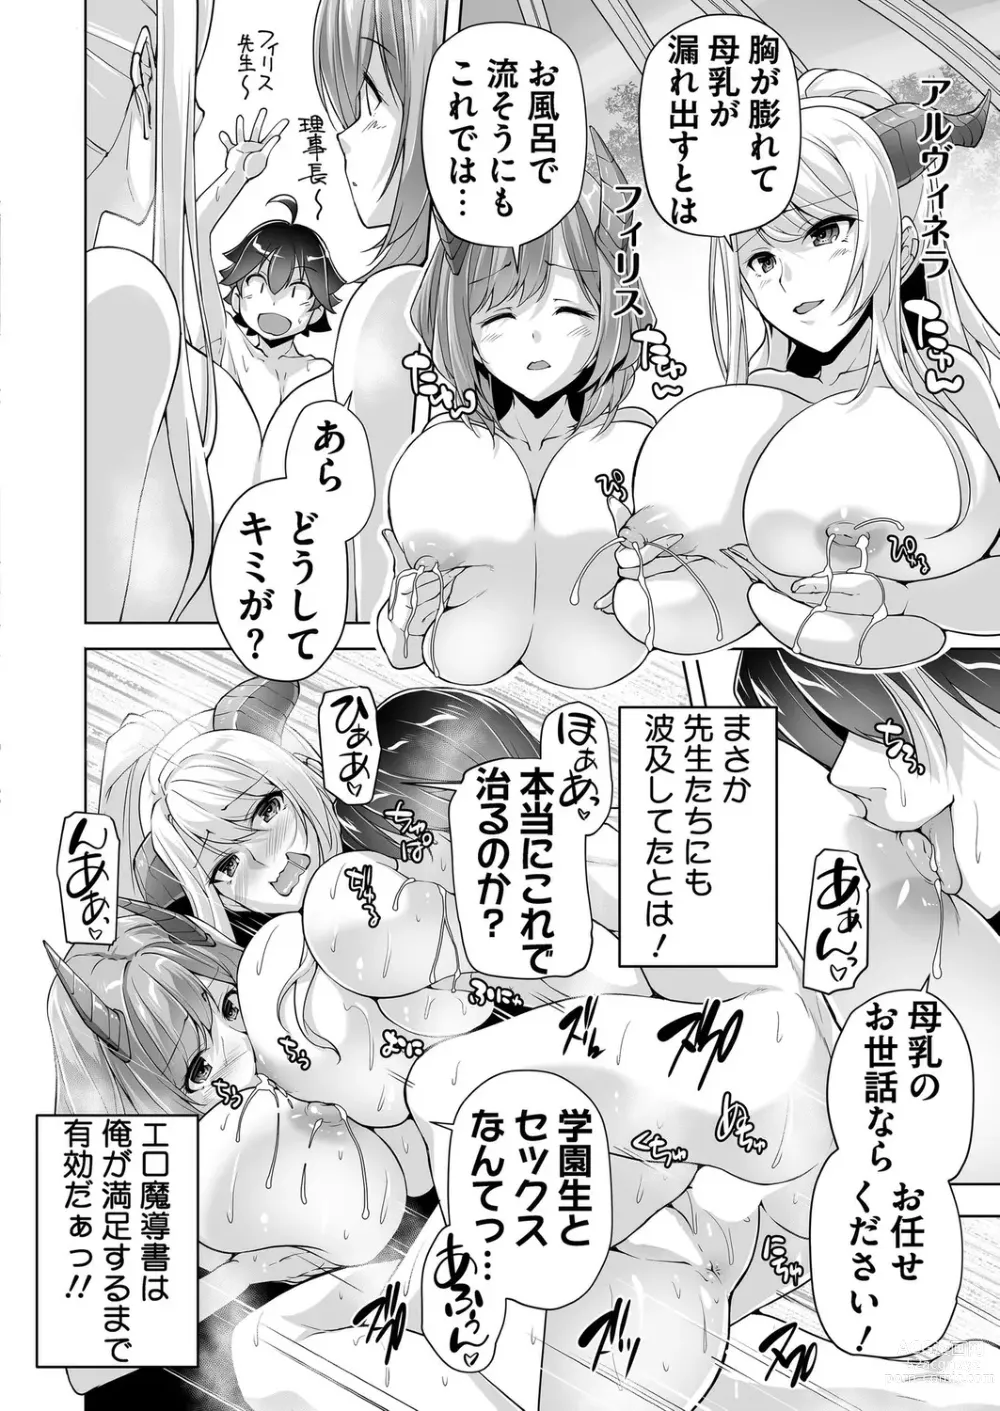 Page 186 of manga BugBug 2023-07